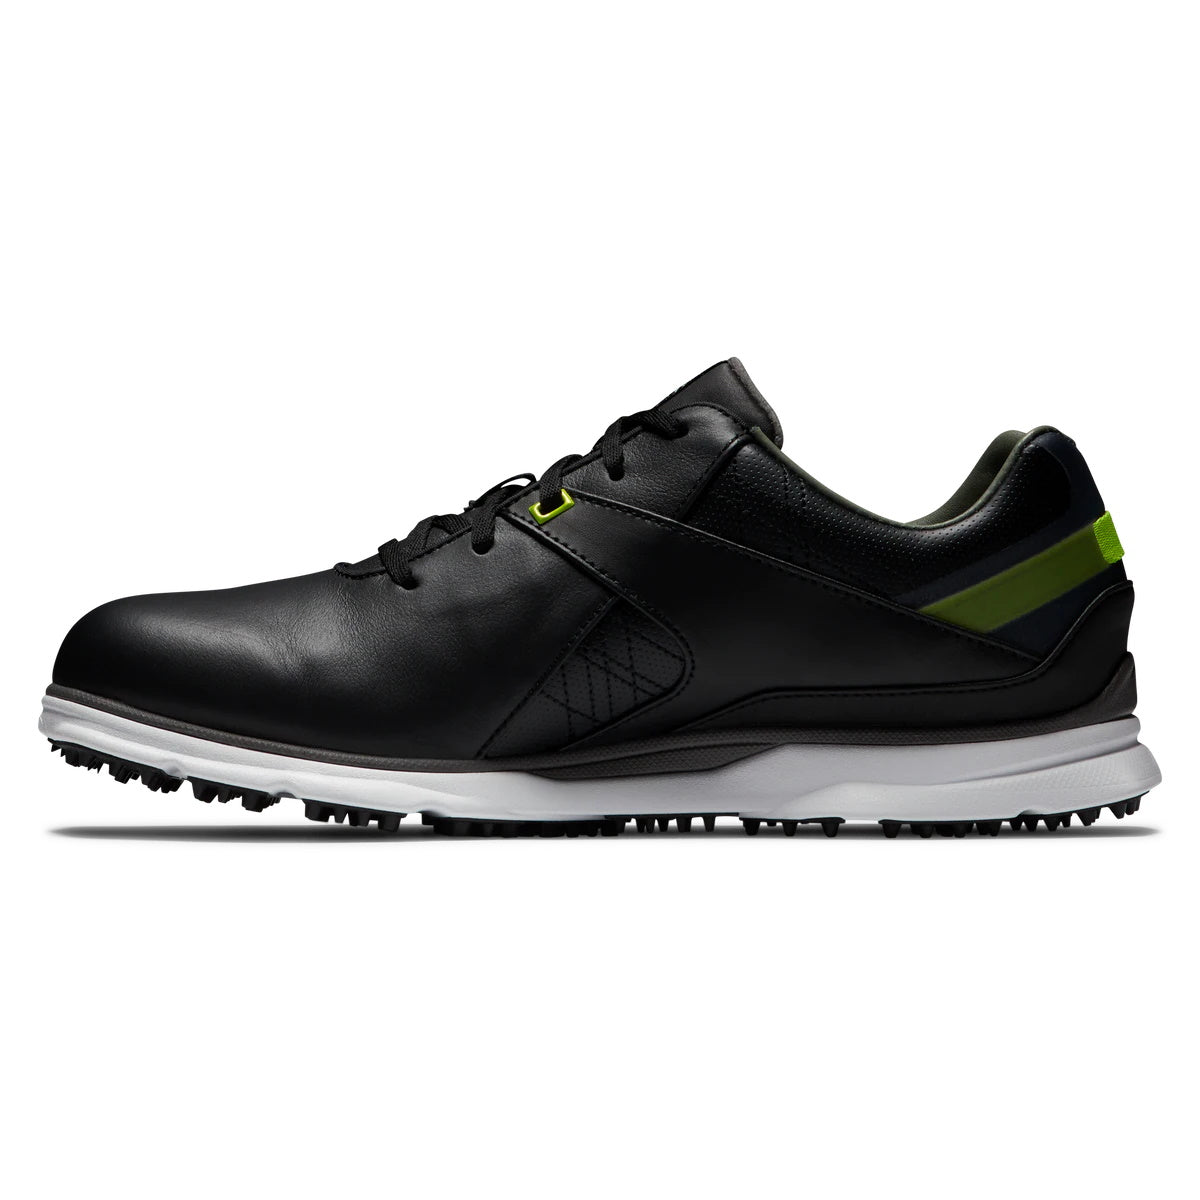 FootJoy Pro SL Men's Black/Lime Golf Shoes - Previous Season Style